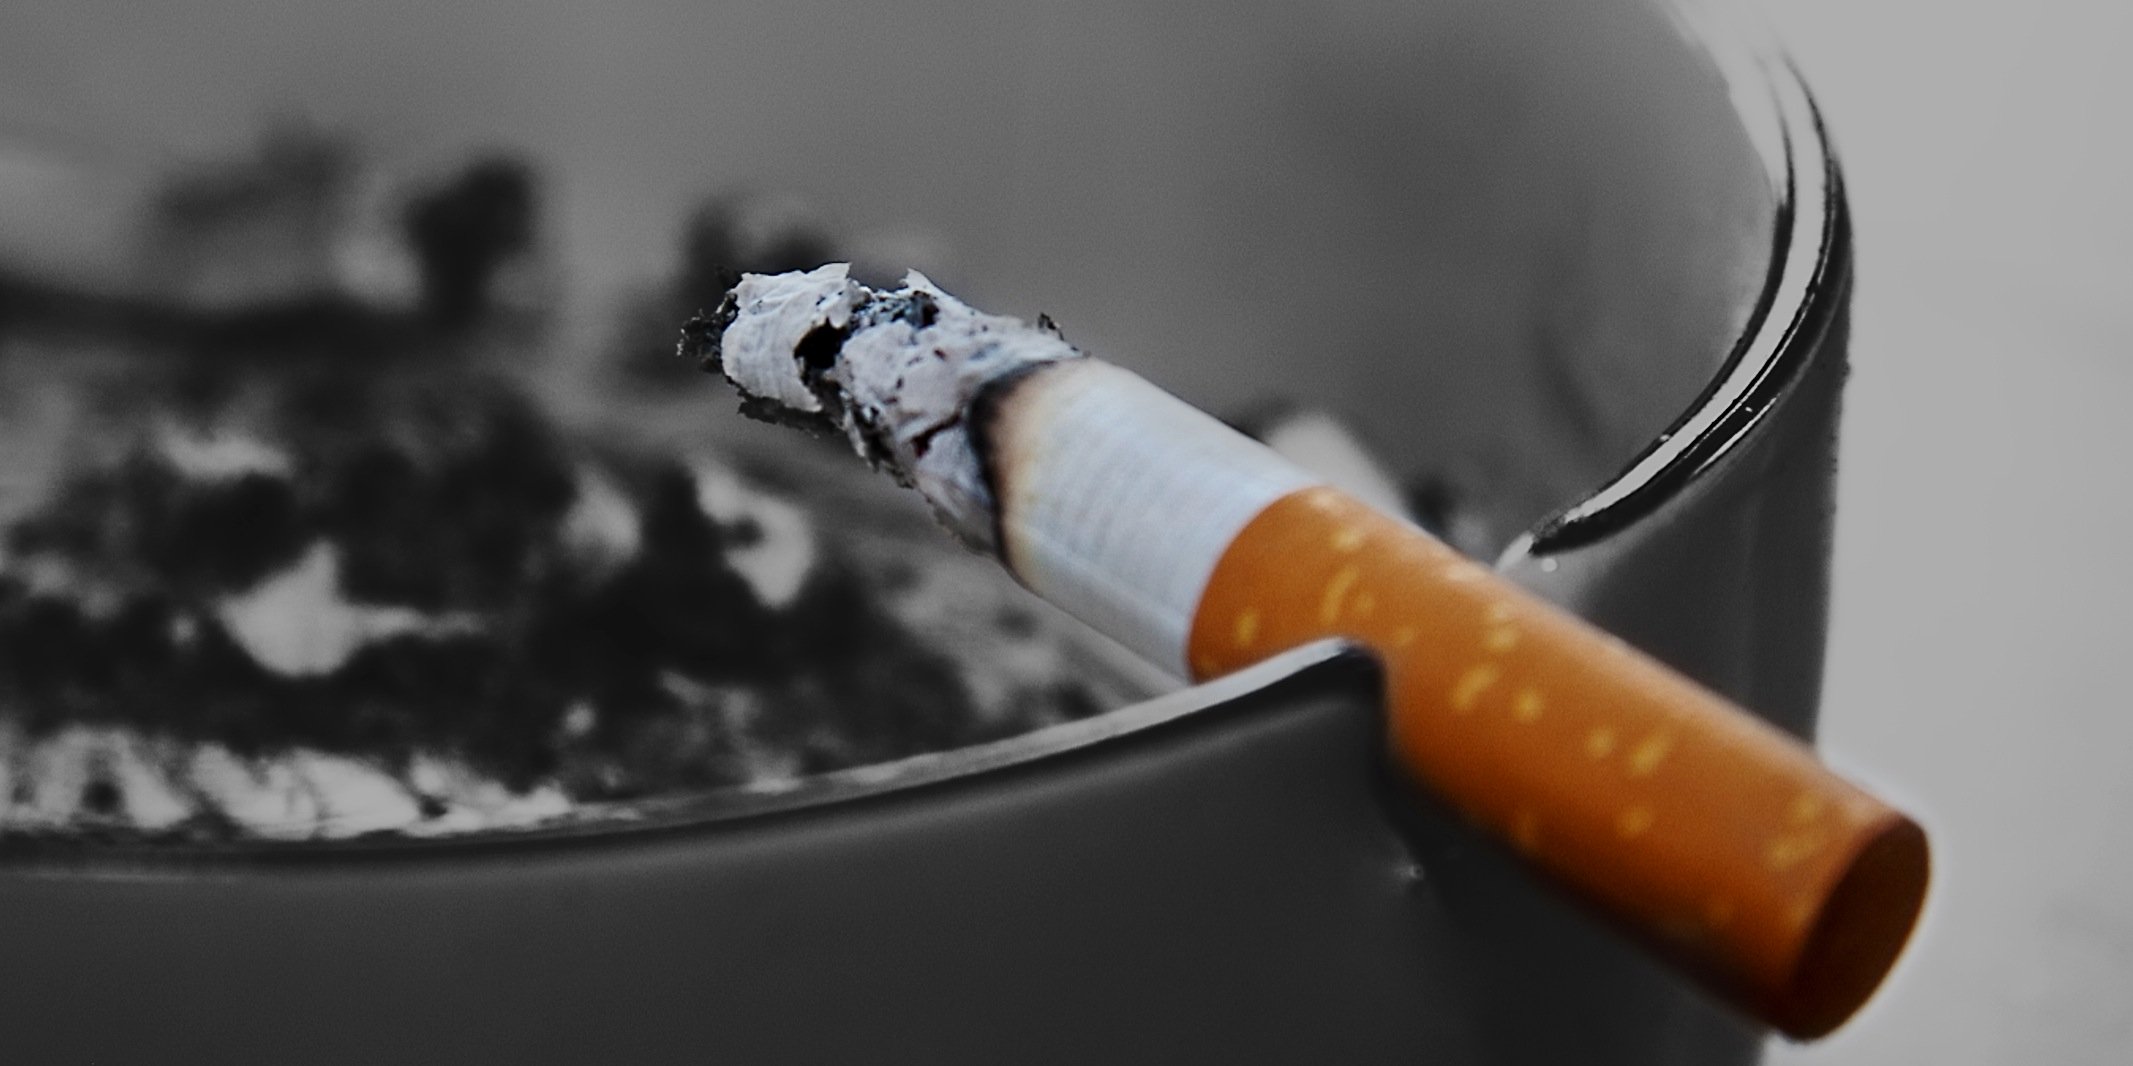 Eine halb gerauchte Zigarette am Rande eines Aschenbechers 